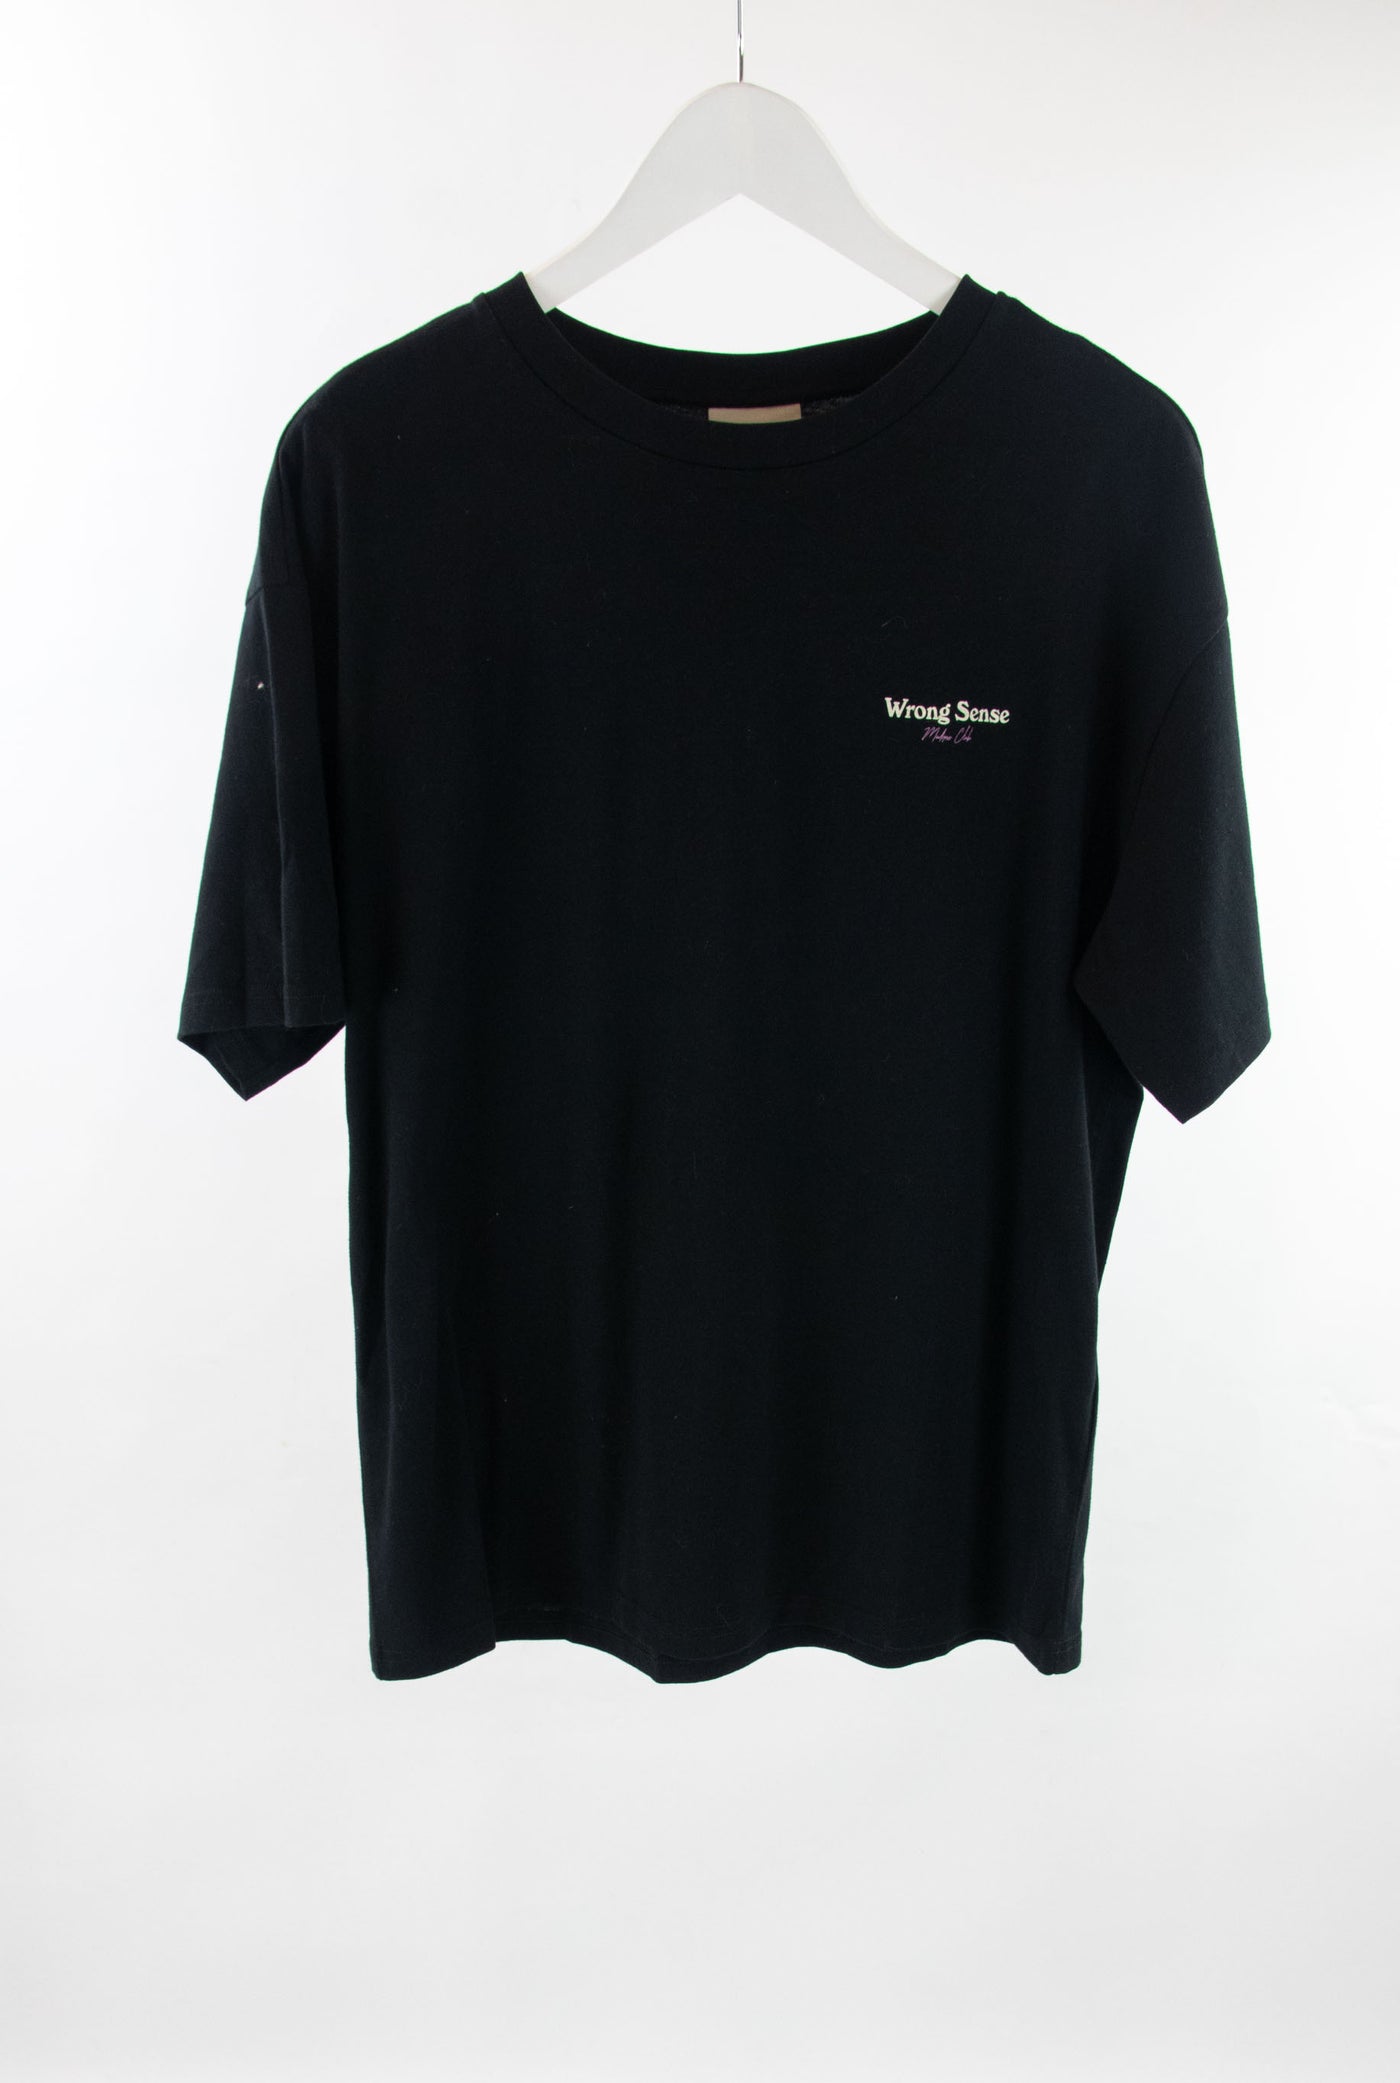 Camiseta negra estampado